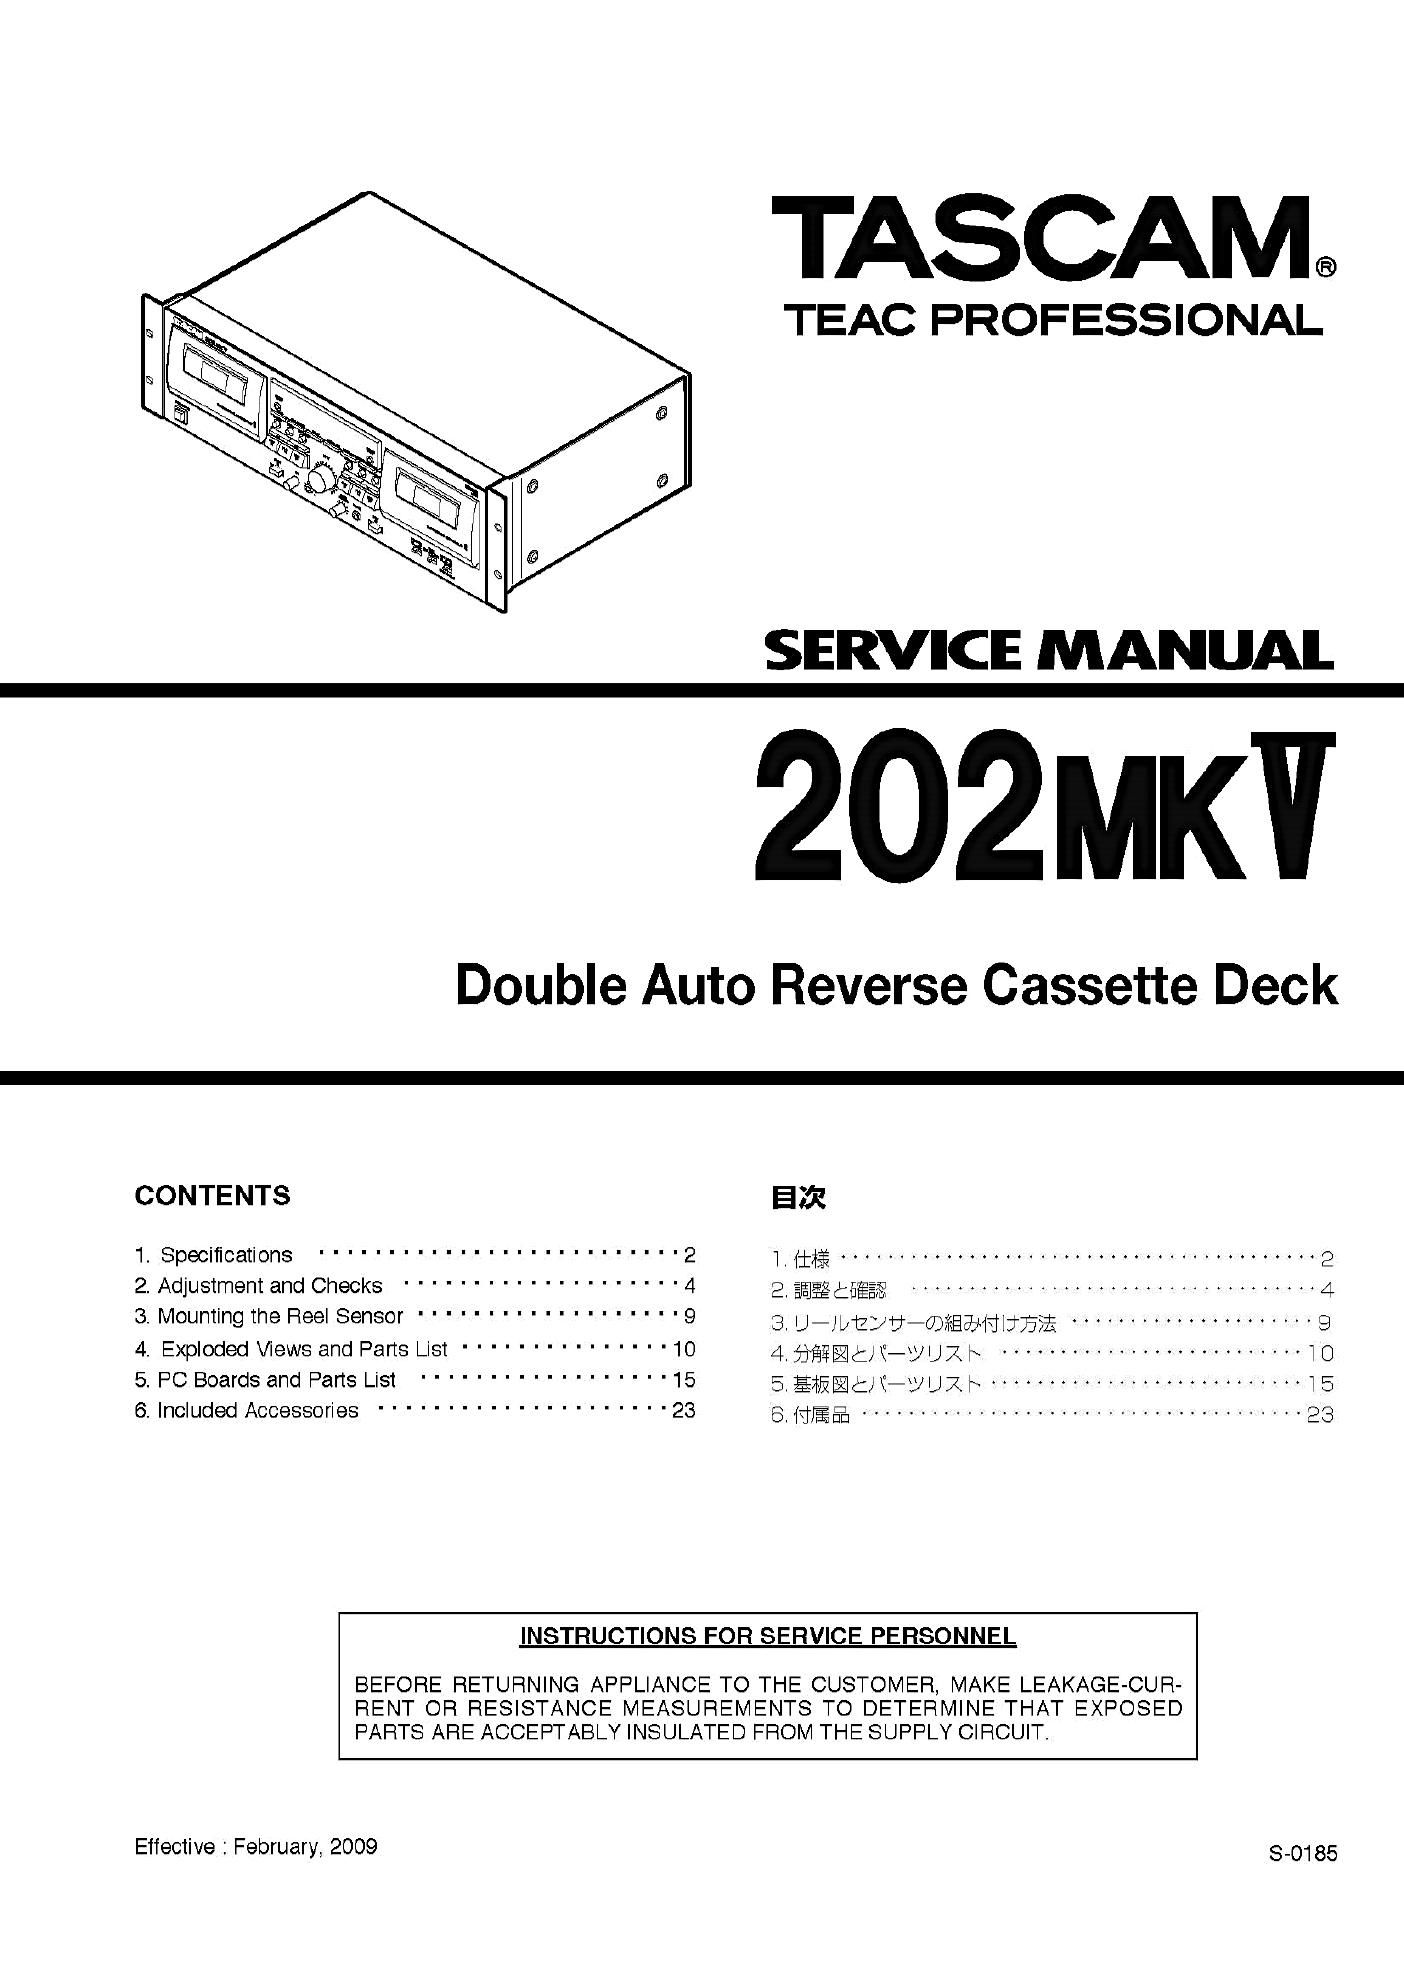 Tascam 202 Mk V Service Manual